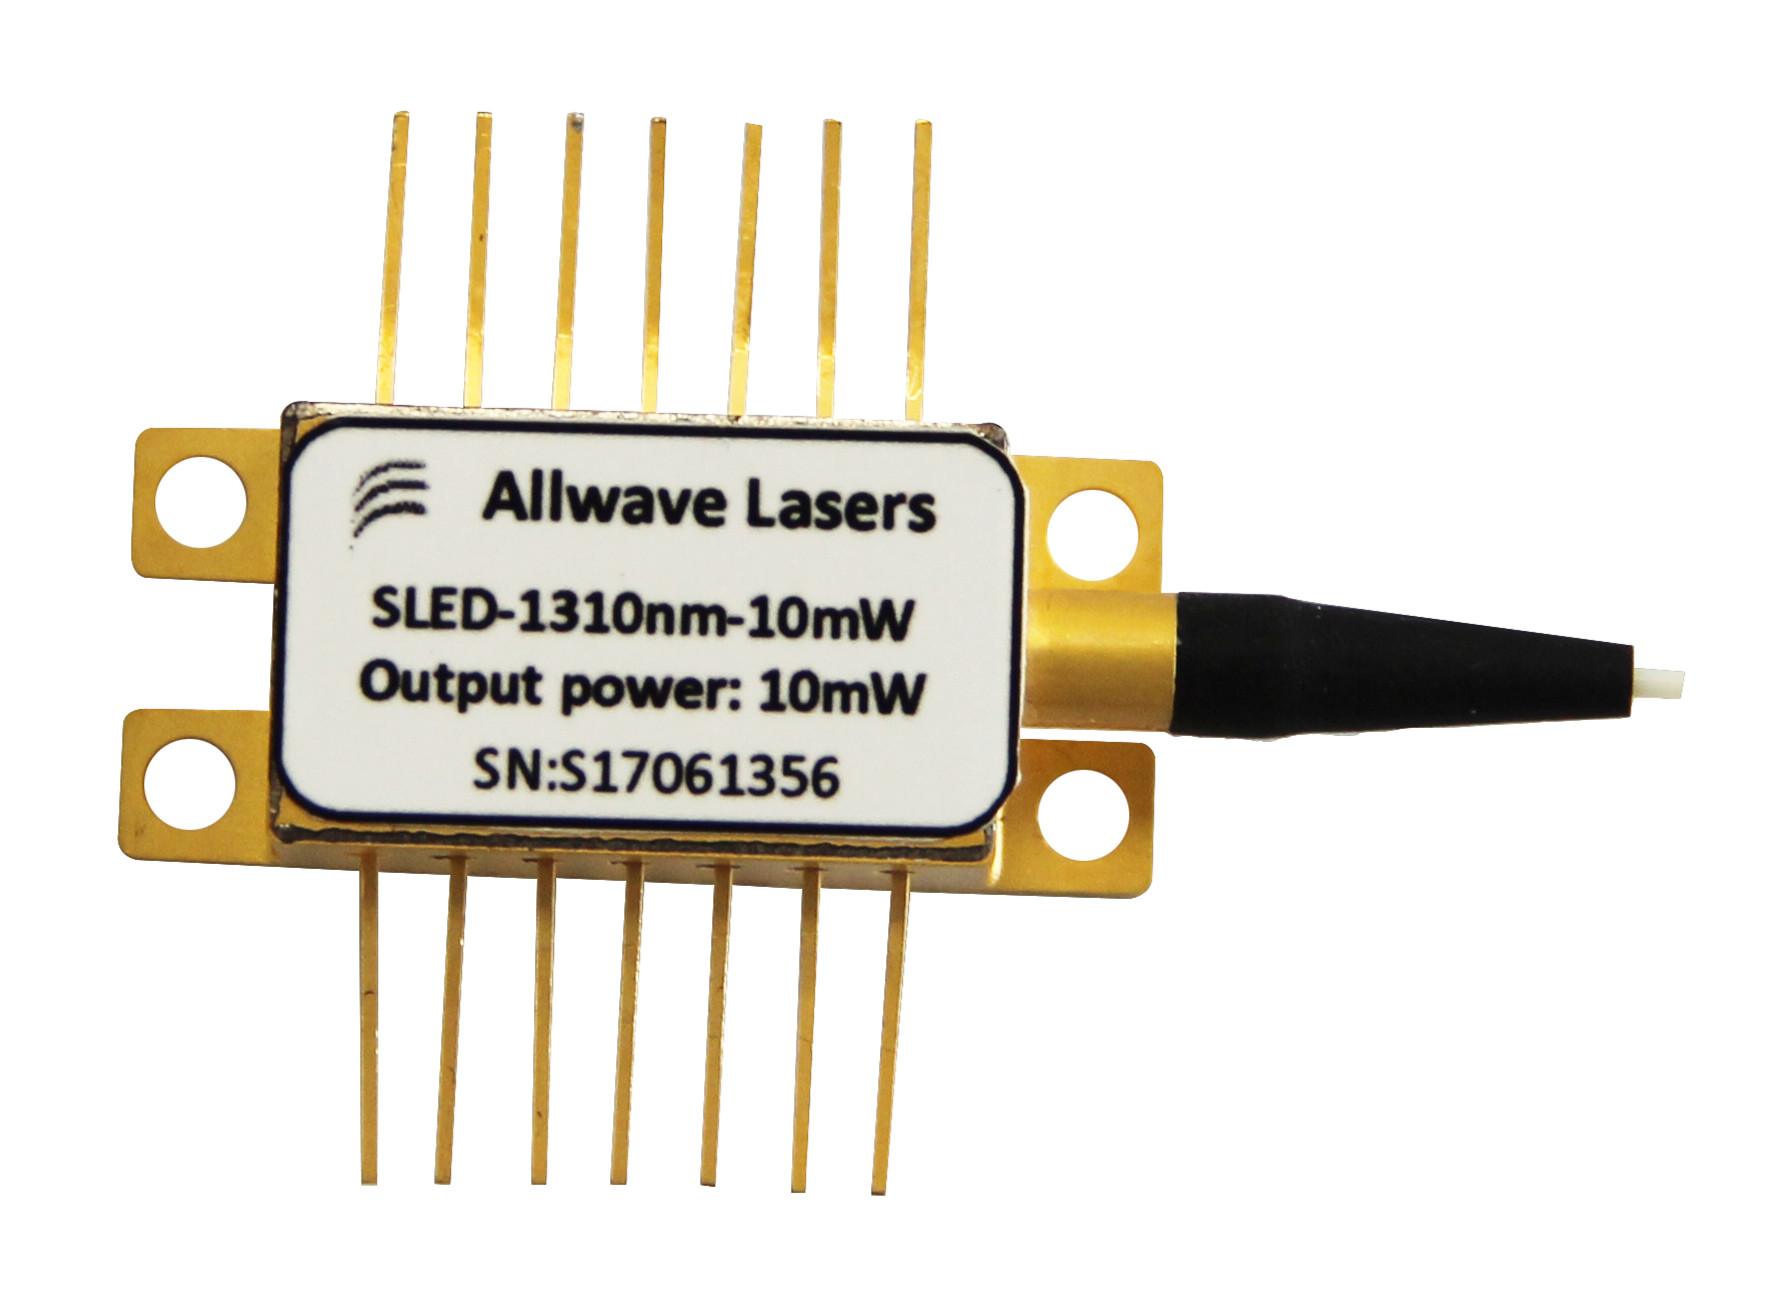 SLED Broadband laser diodes